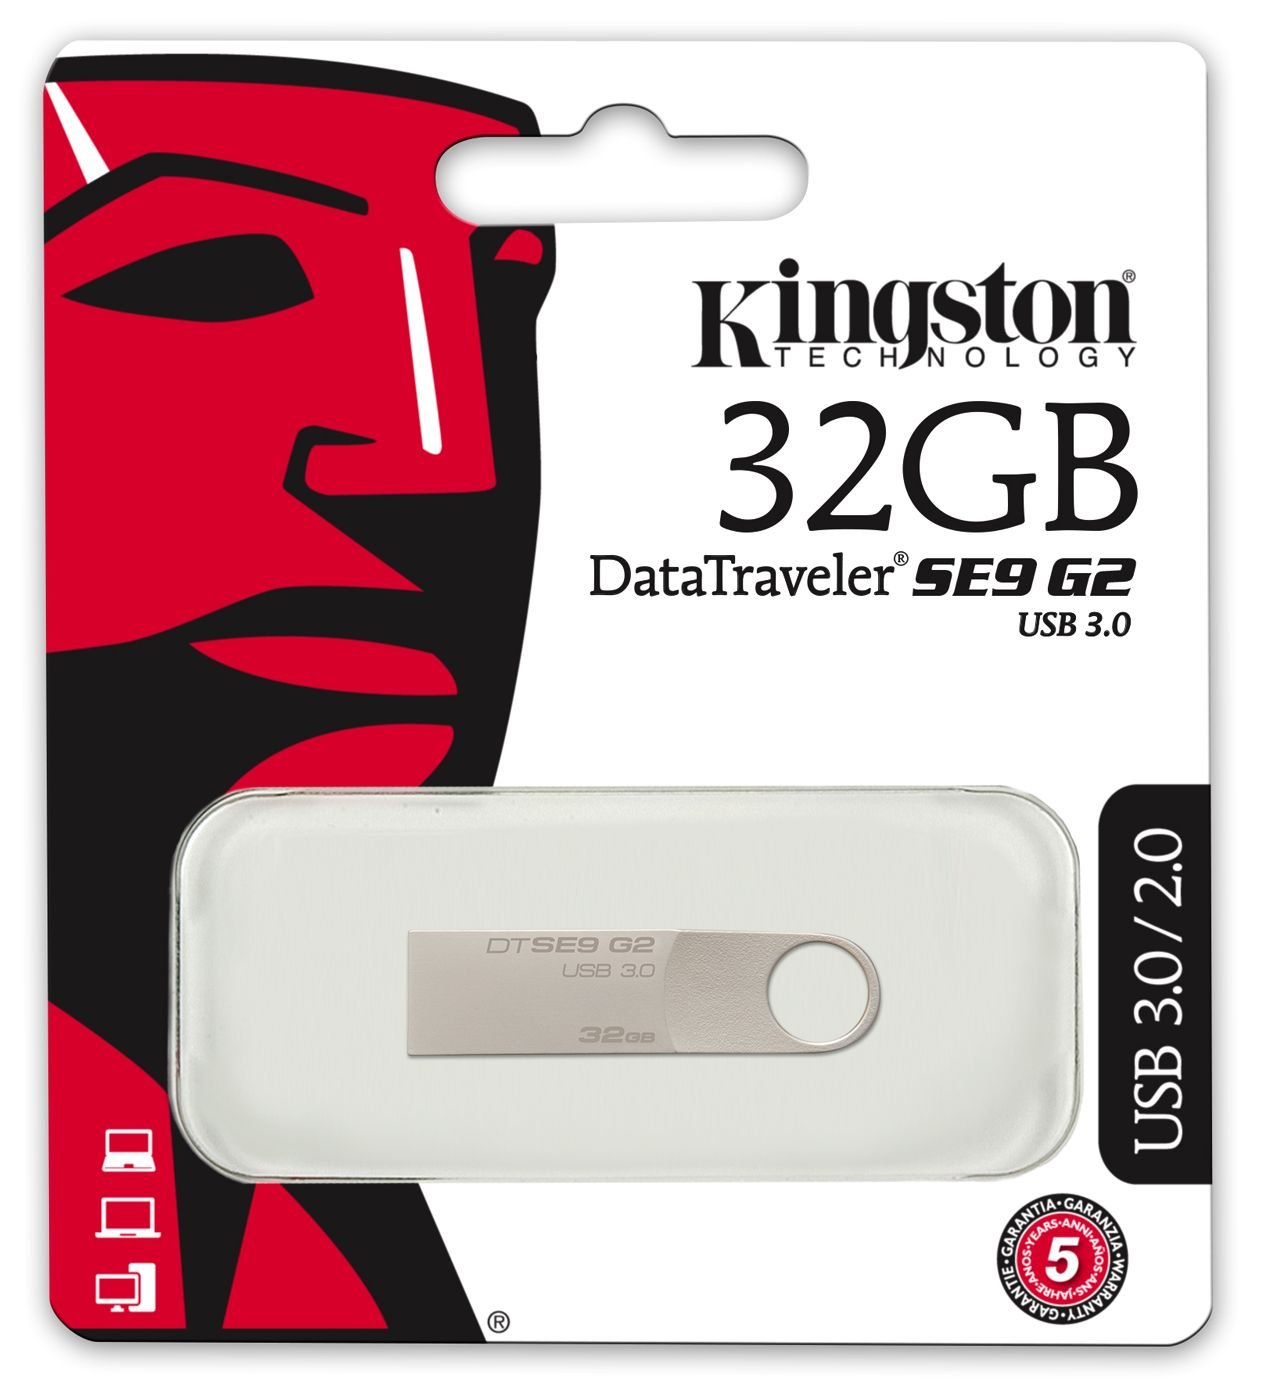 KINGSTON DATA TRAVELER SE9 G2 32GB 3.0 KOVOVY DTSE9G2/32GB